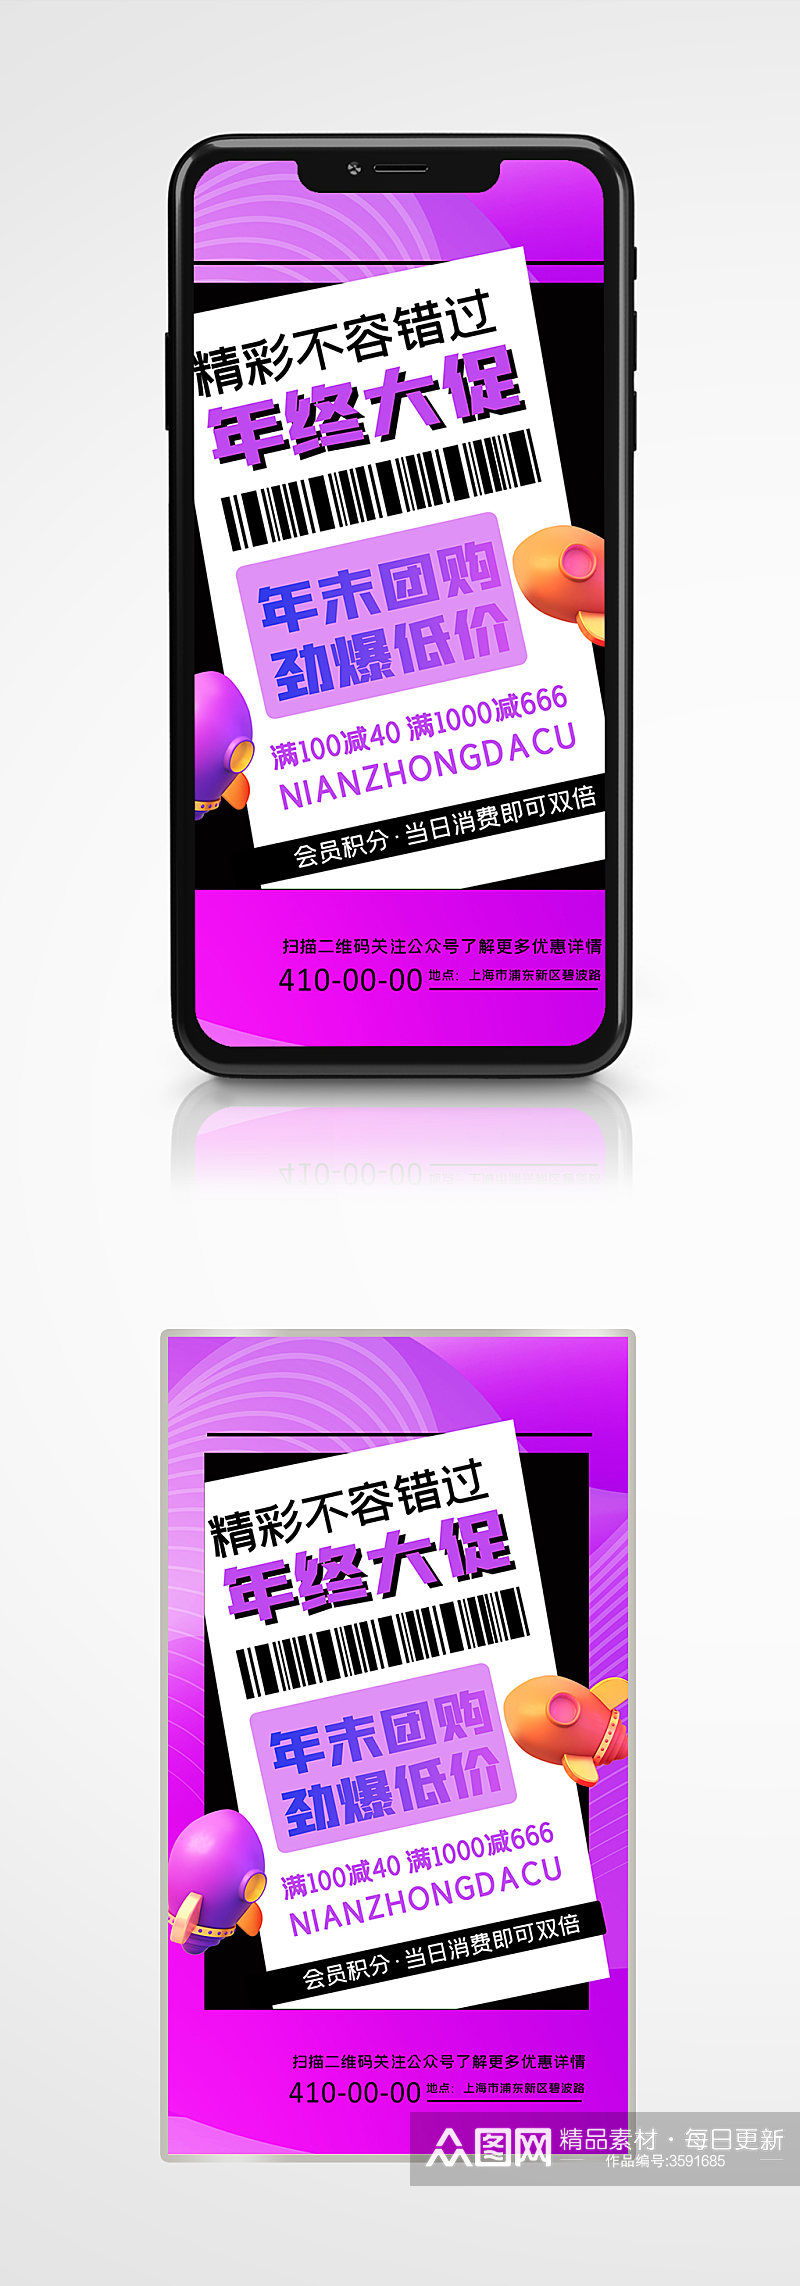 紫色流体渐变年终大促活动促销手机海报素材